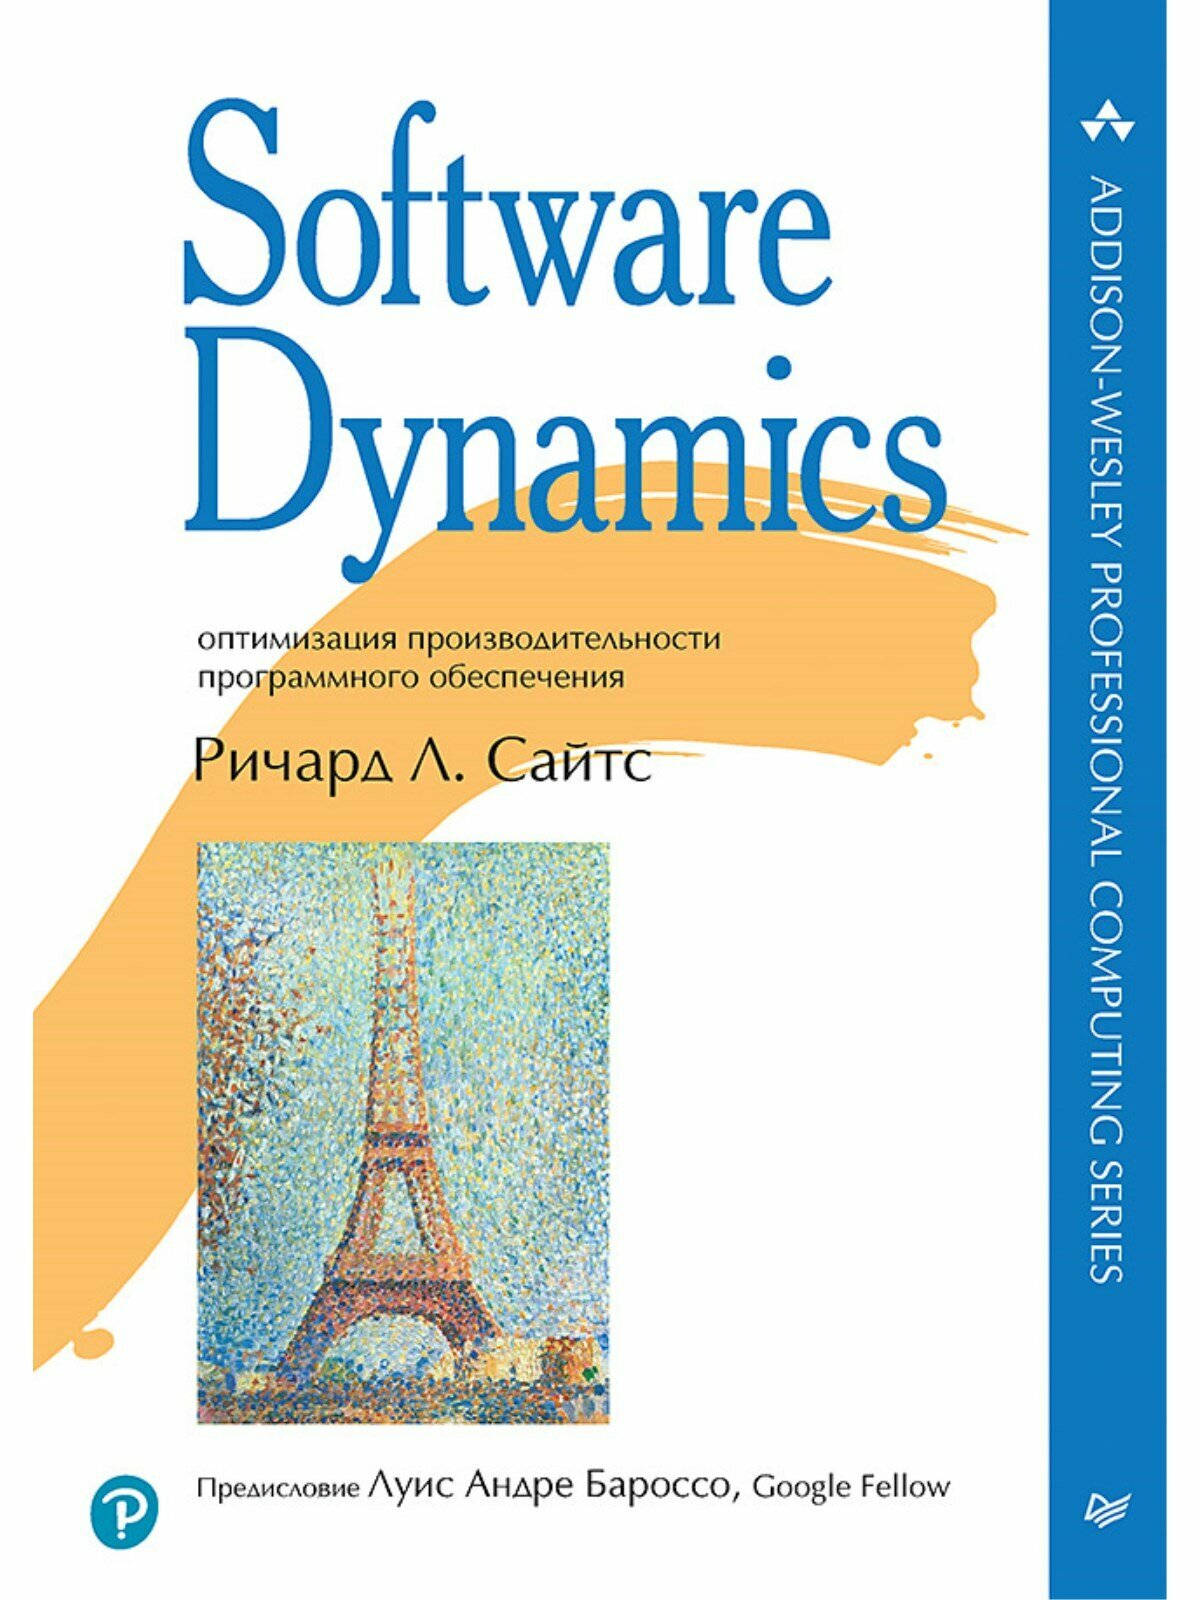 Software Dynamics: оптимизация производительности программного обеспечения